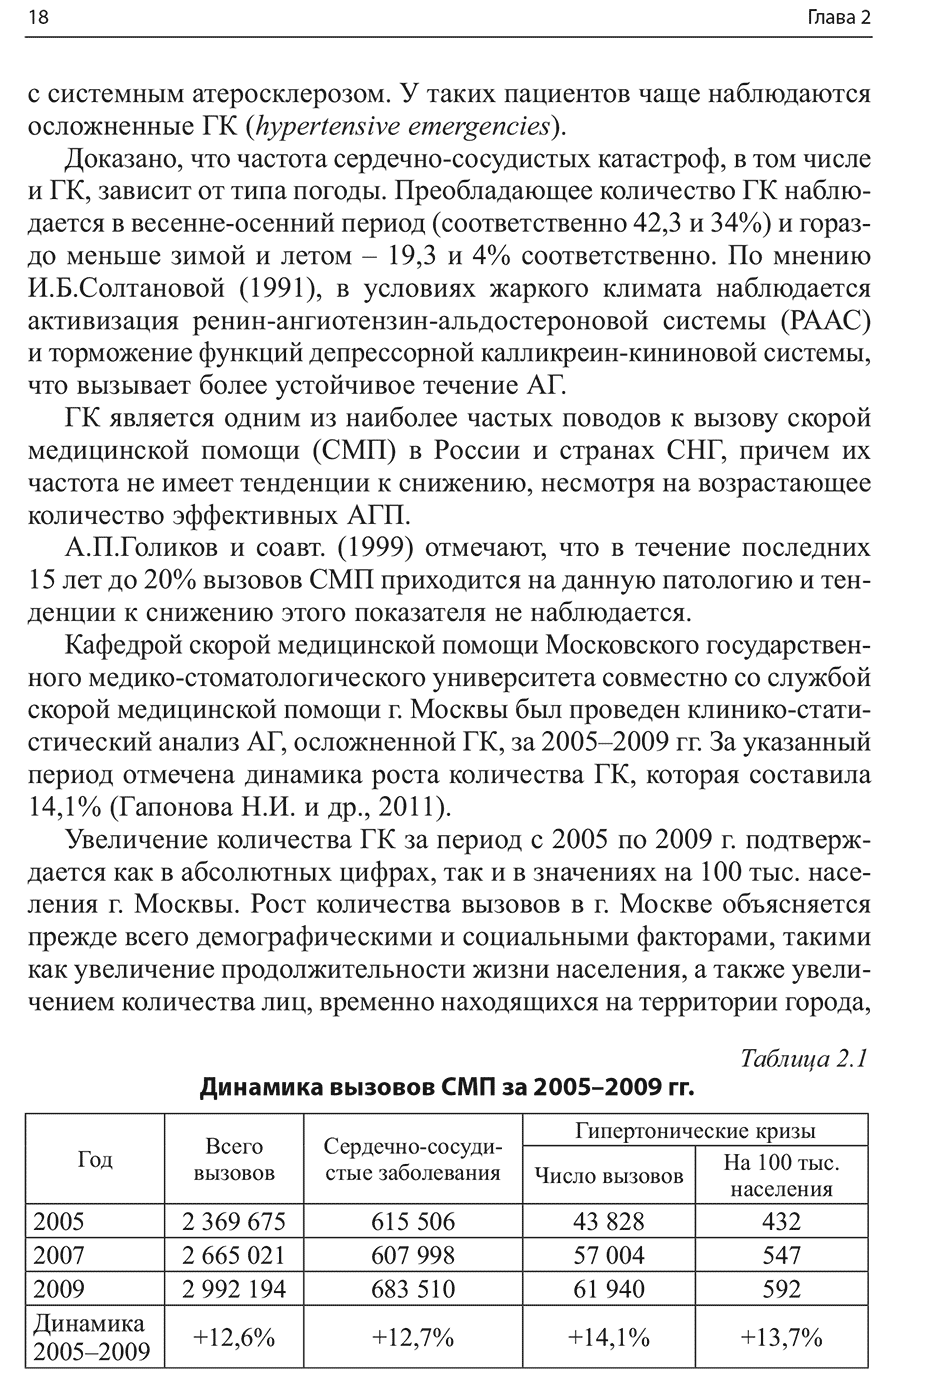 Пример страницы из книги "Гипертонические кризы" - С. Н. Терещенко